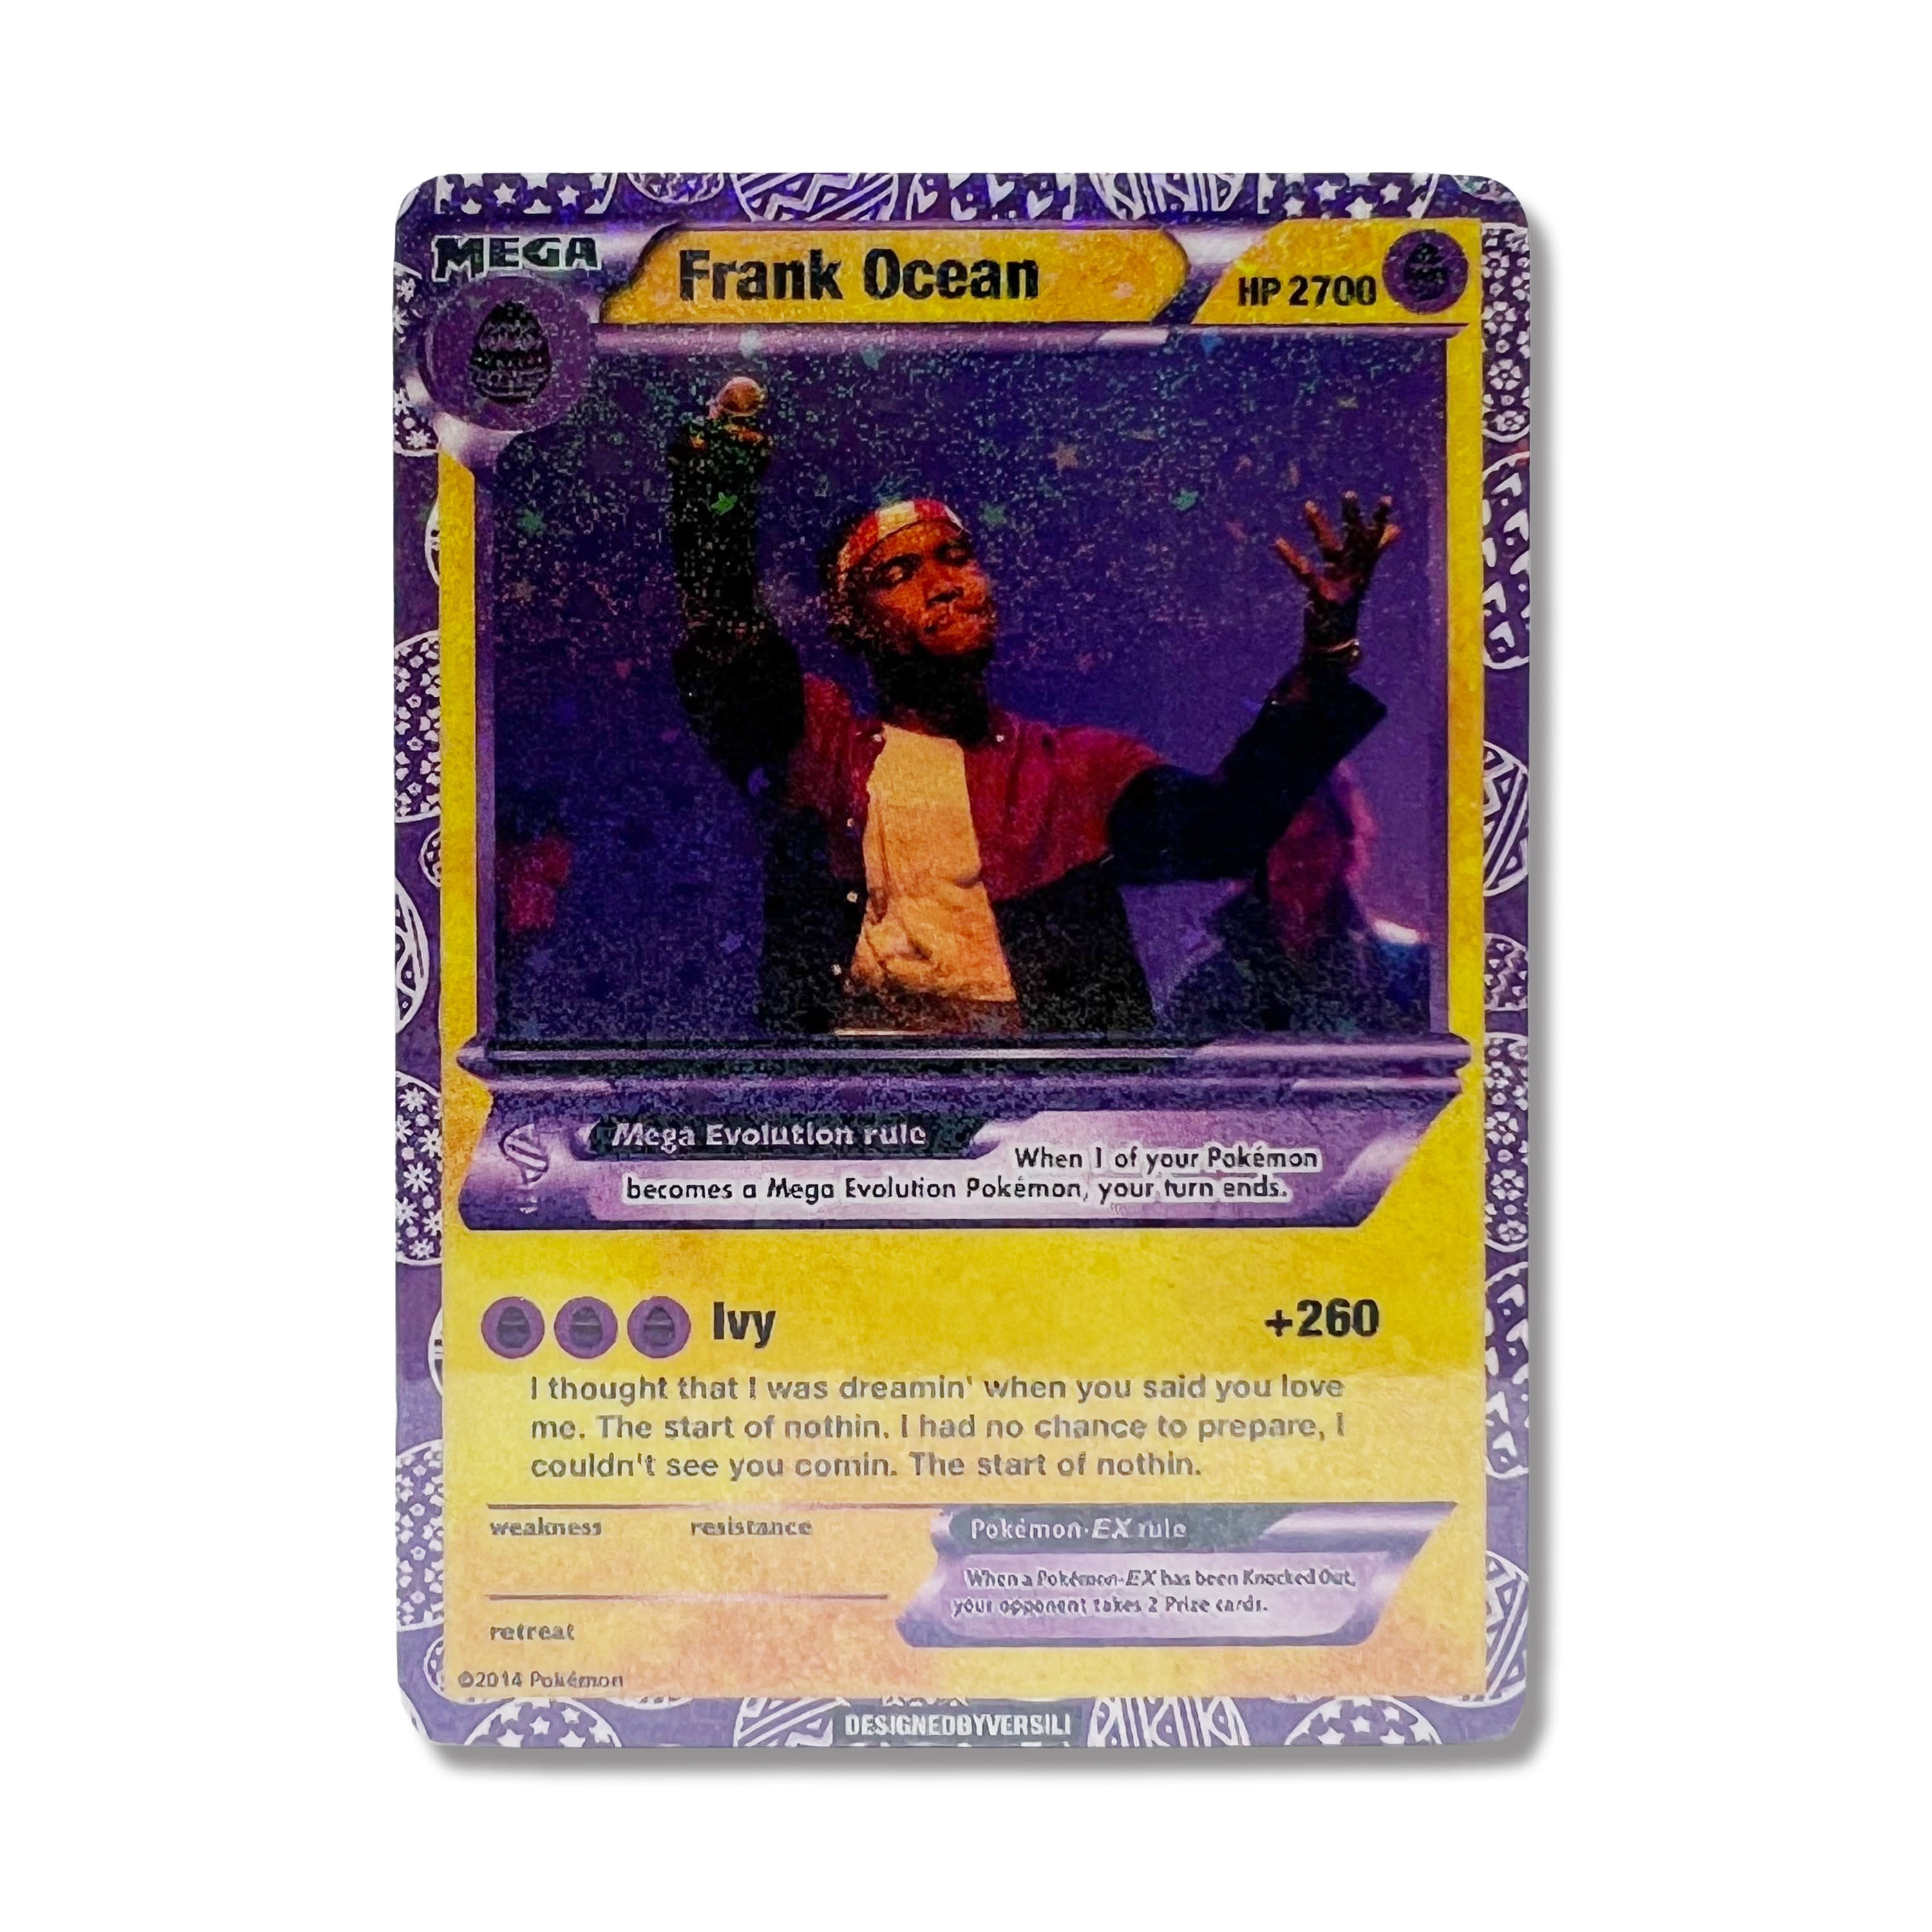 Frank Ocean Pokémon Card (Easter)